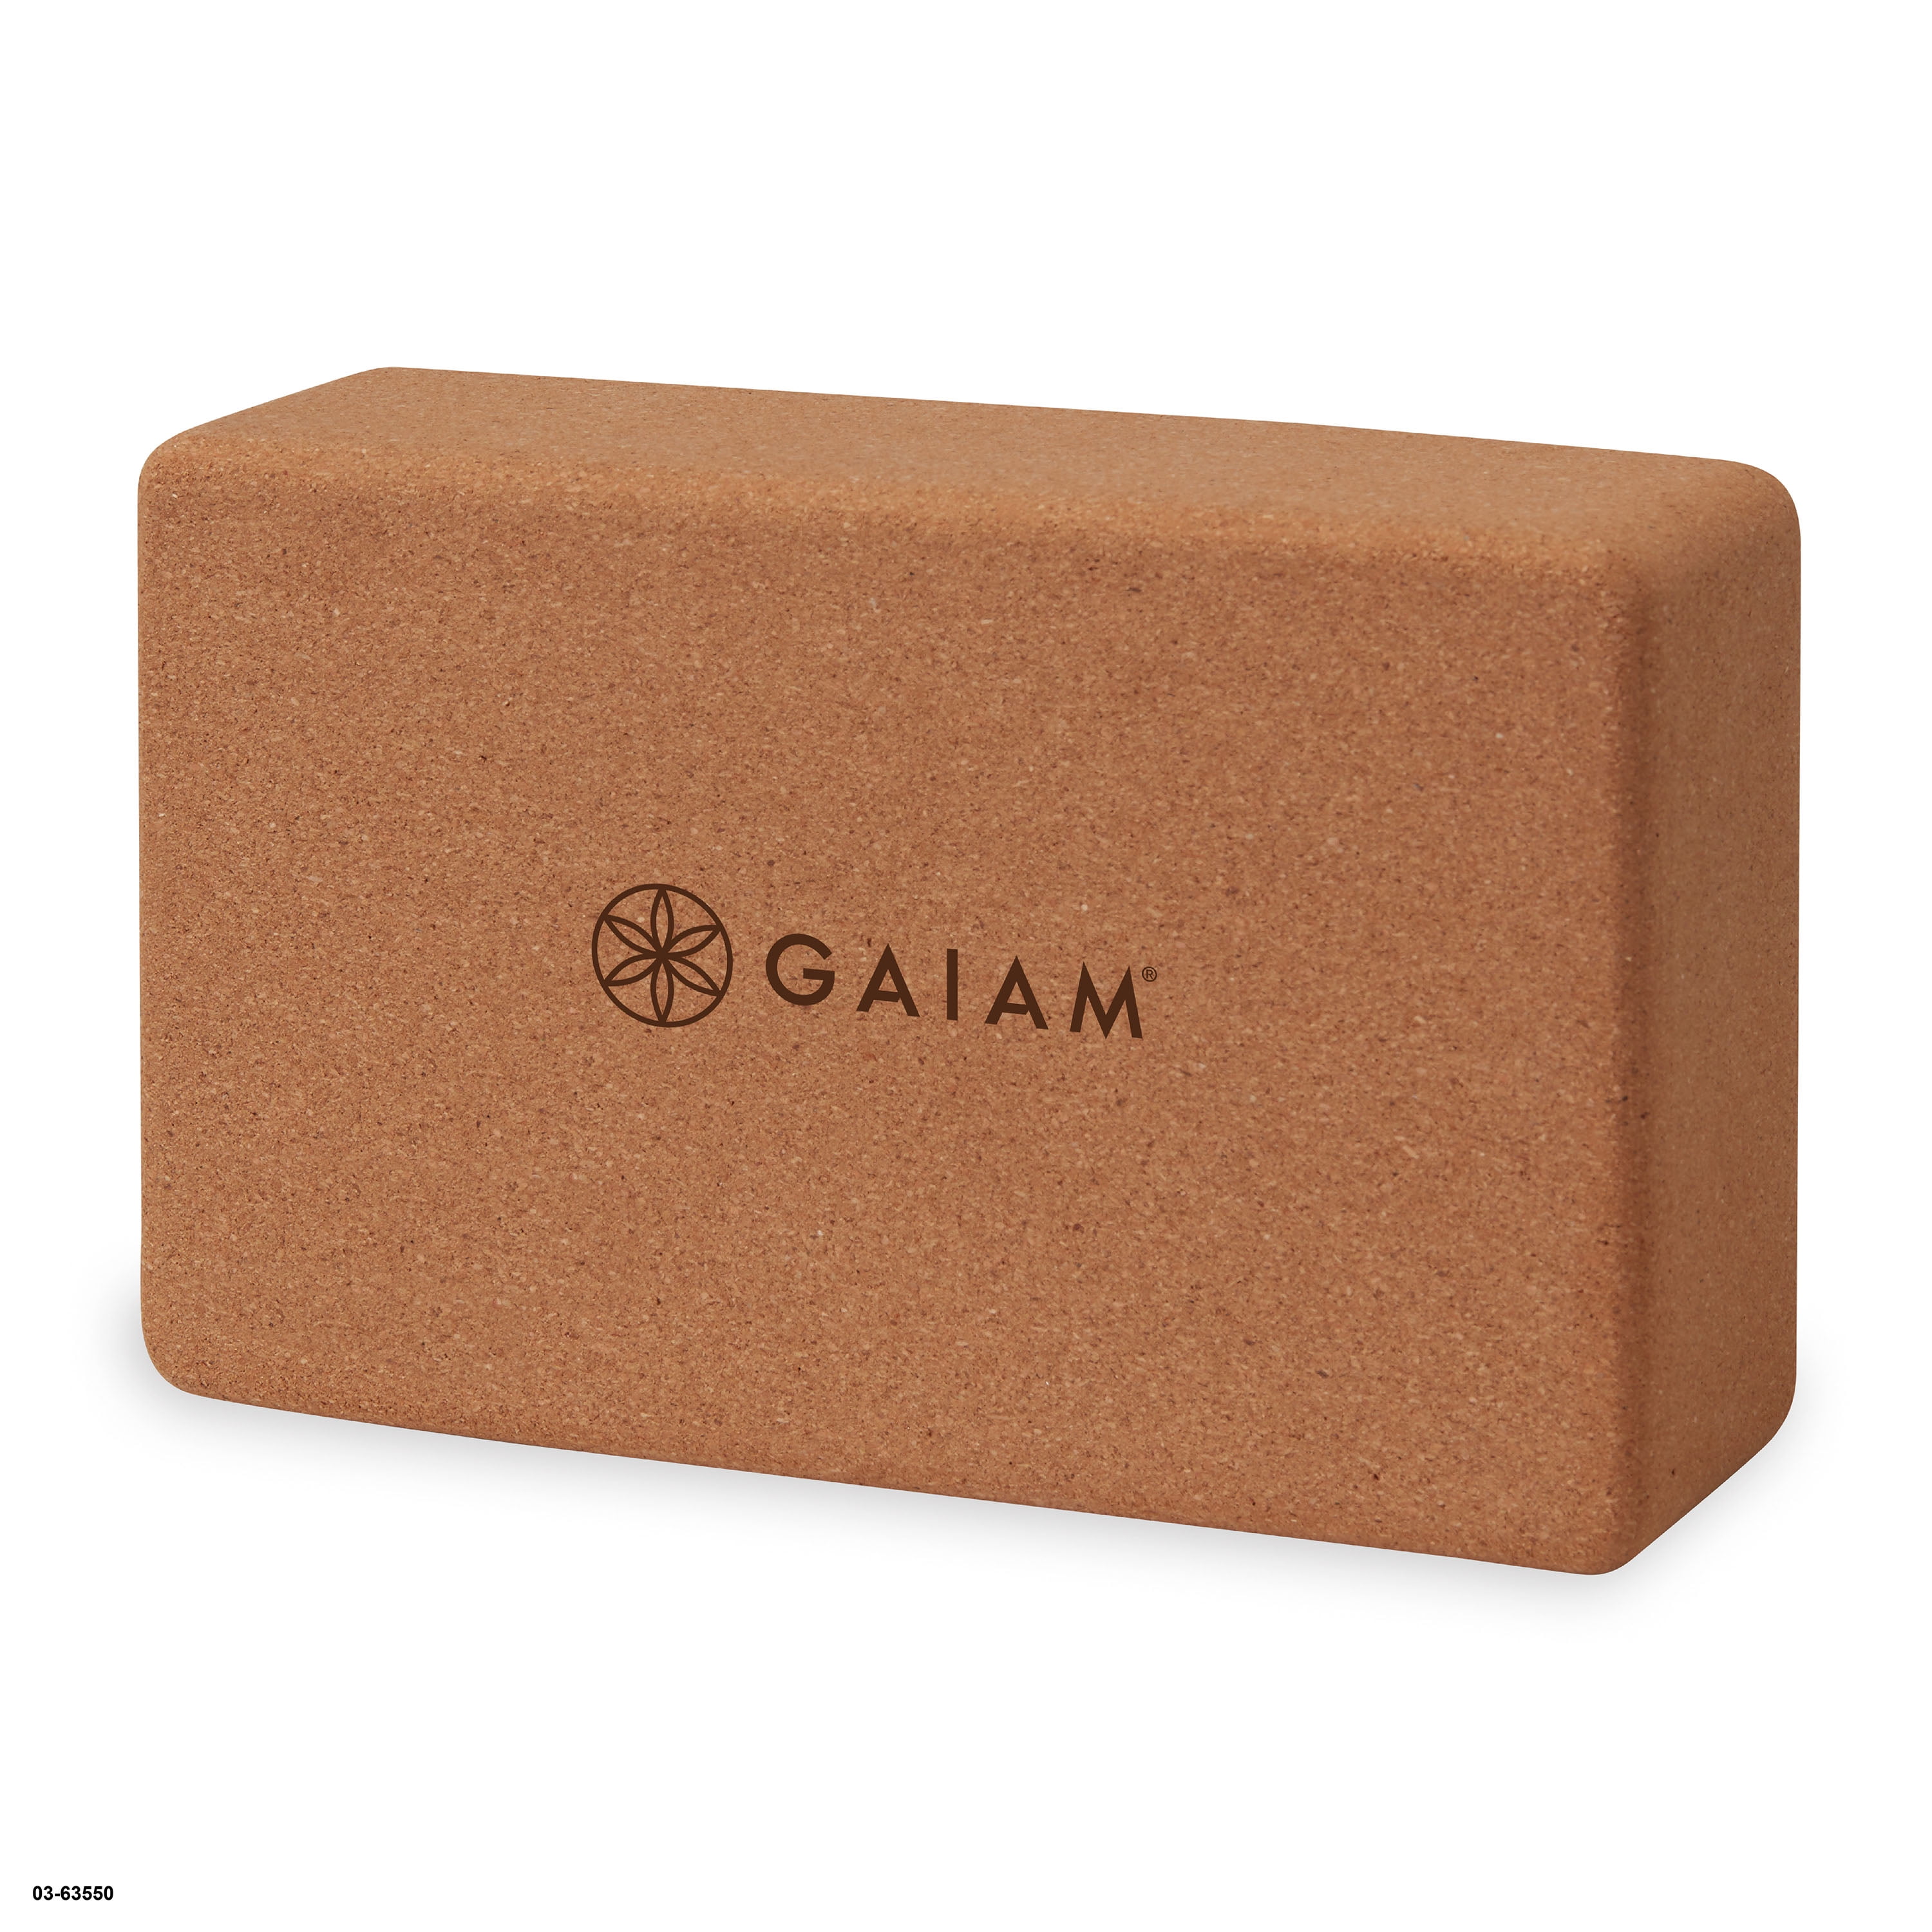 Gaiam Printed Fashion Yoga Block, Made from Sturdy Foam, Pink